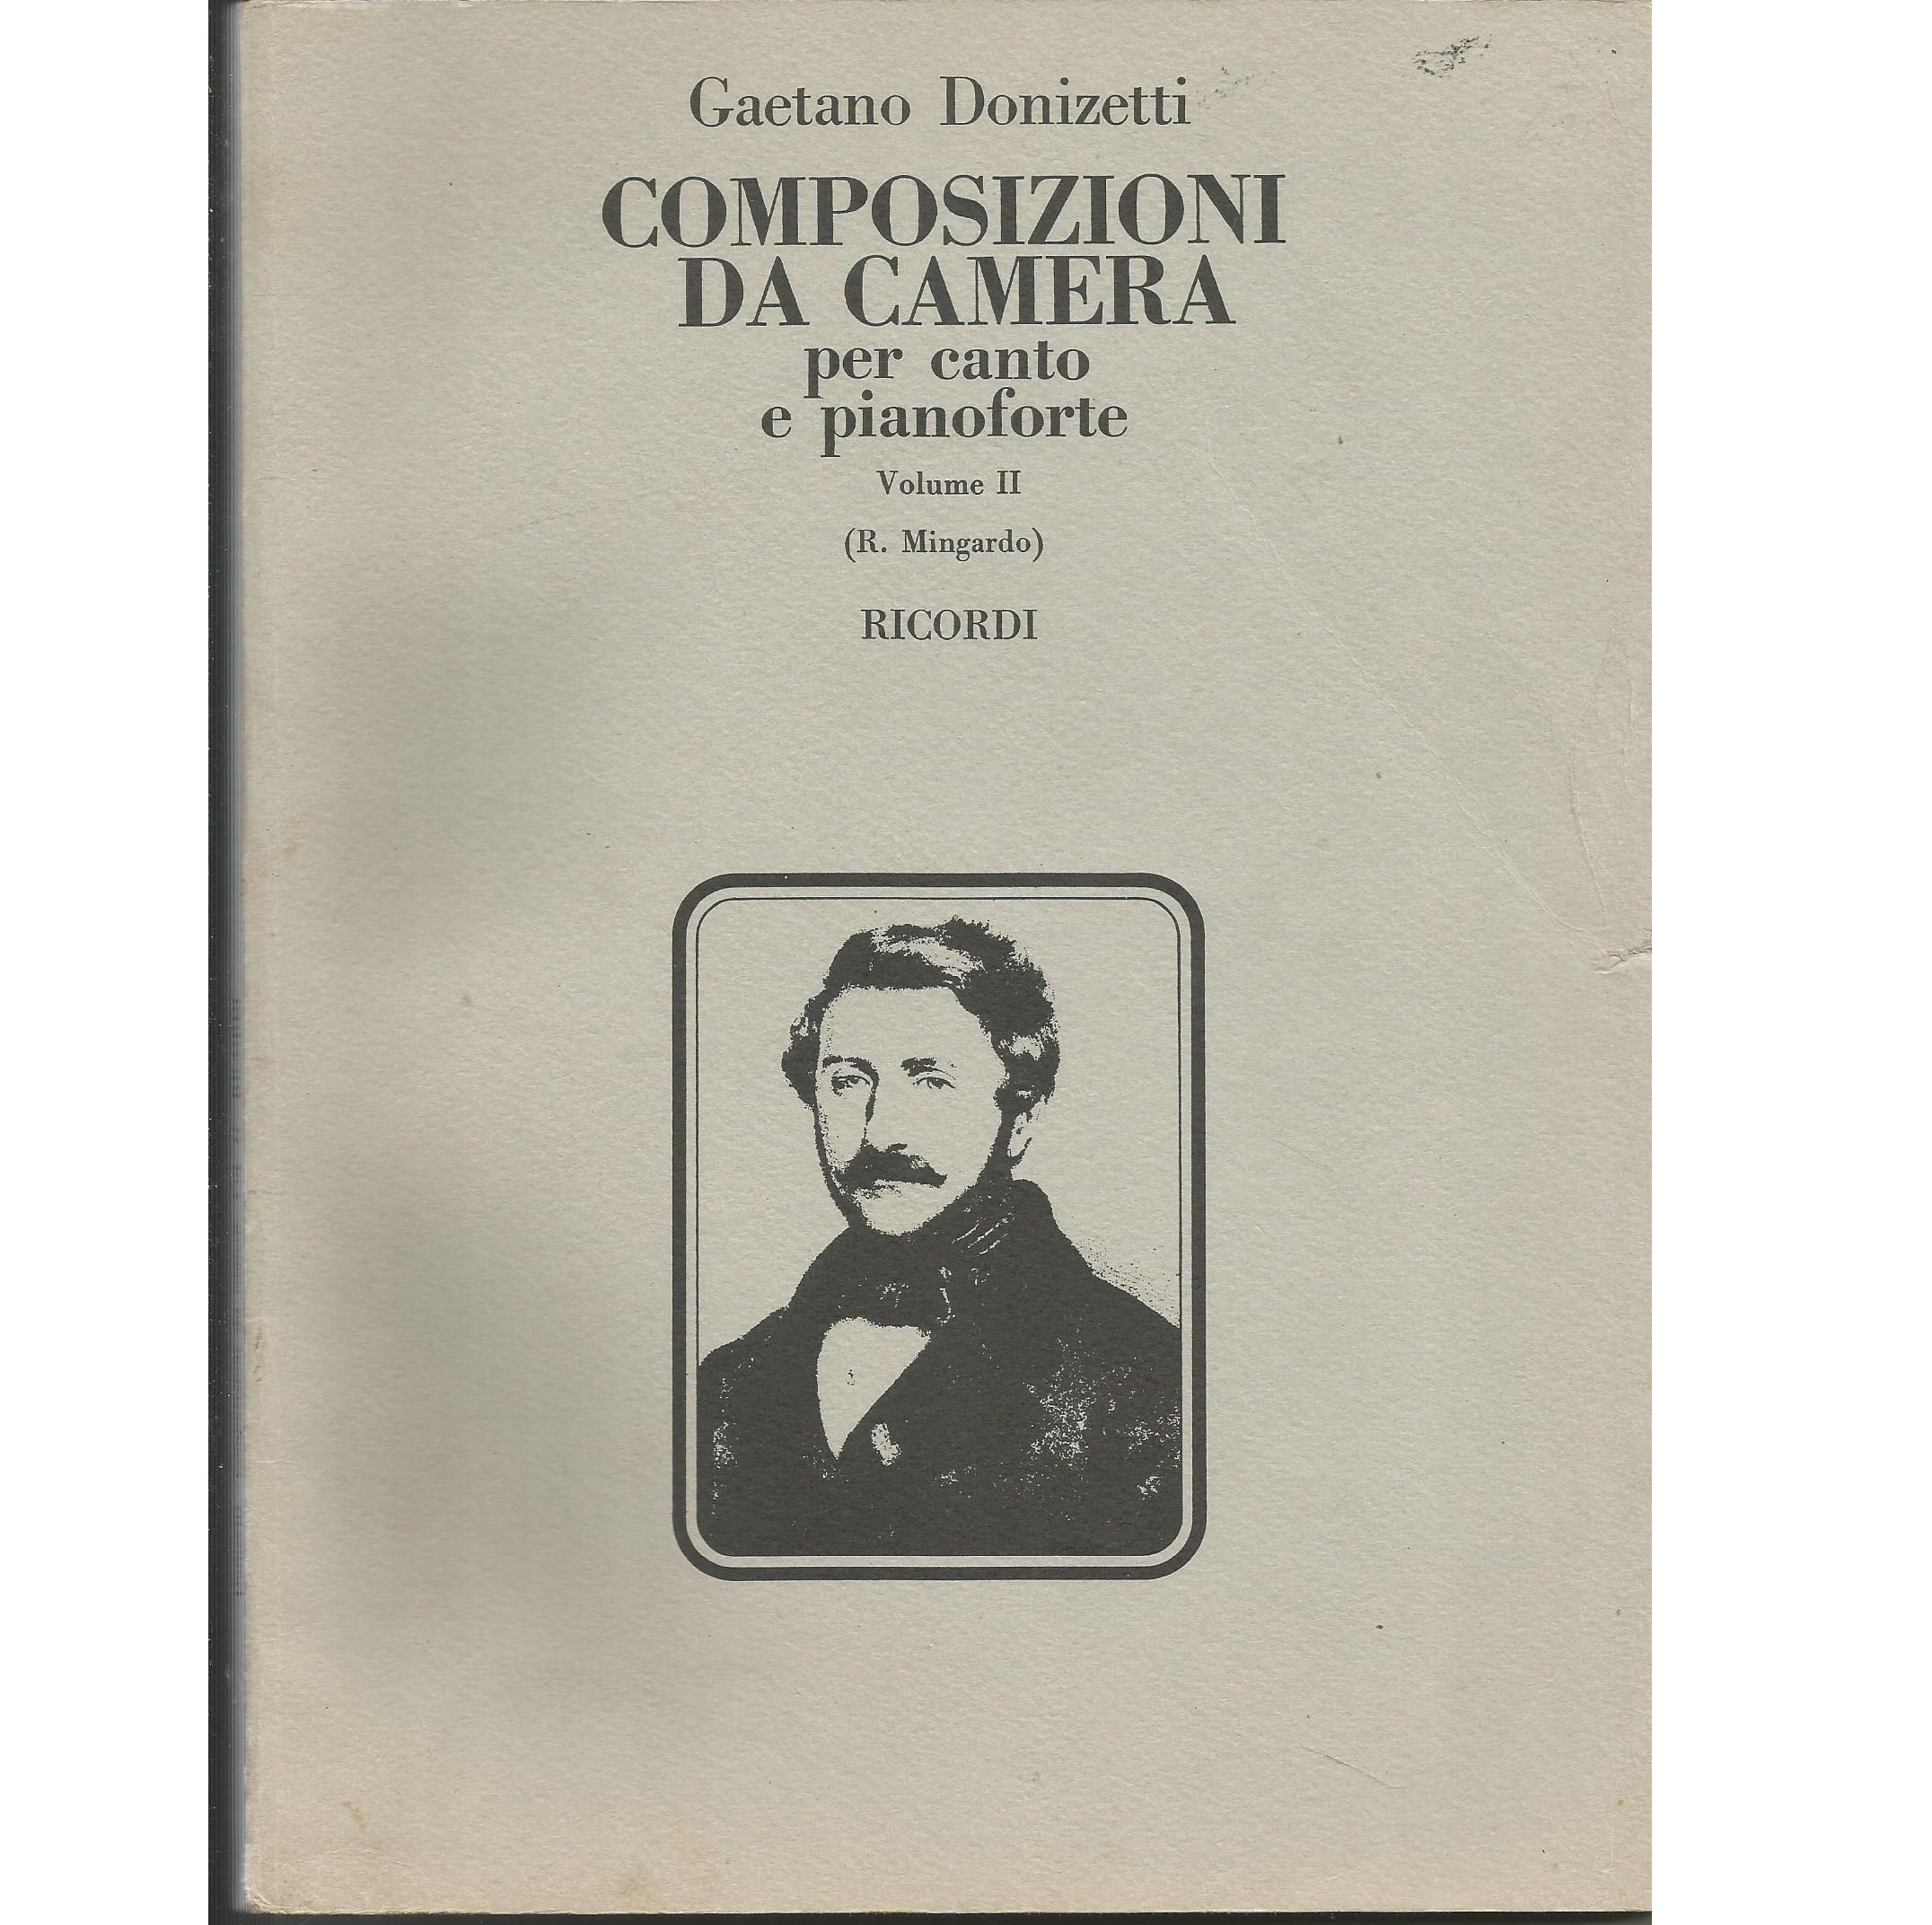 Gaetano Donizetti COMPOSIZIONI DA CAMERA per canto e pianoforte Volume II - Ricordi